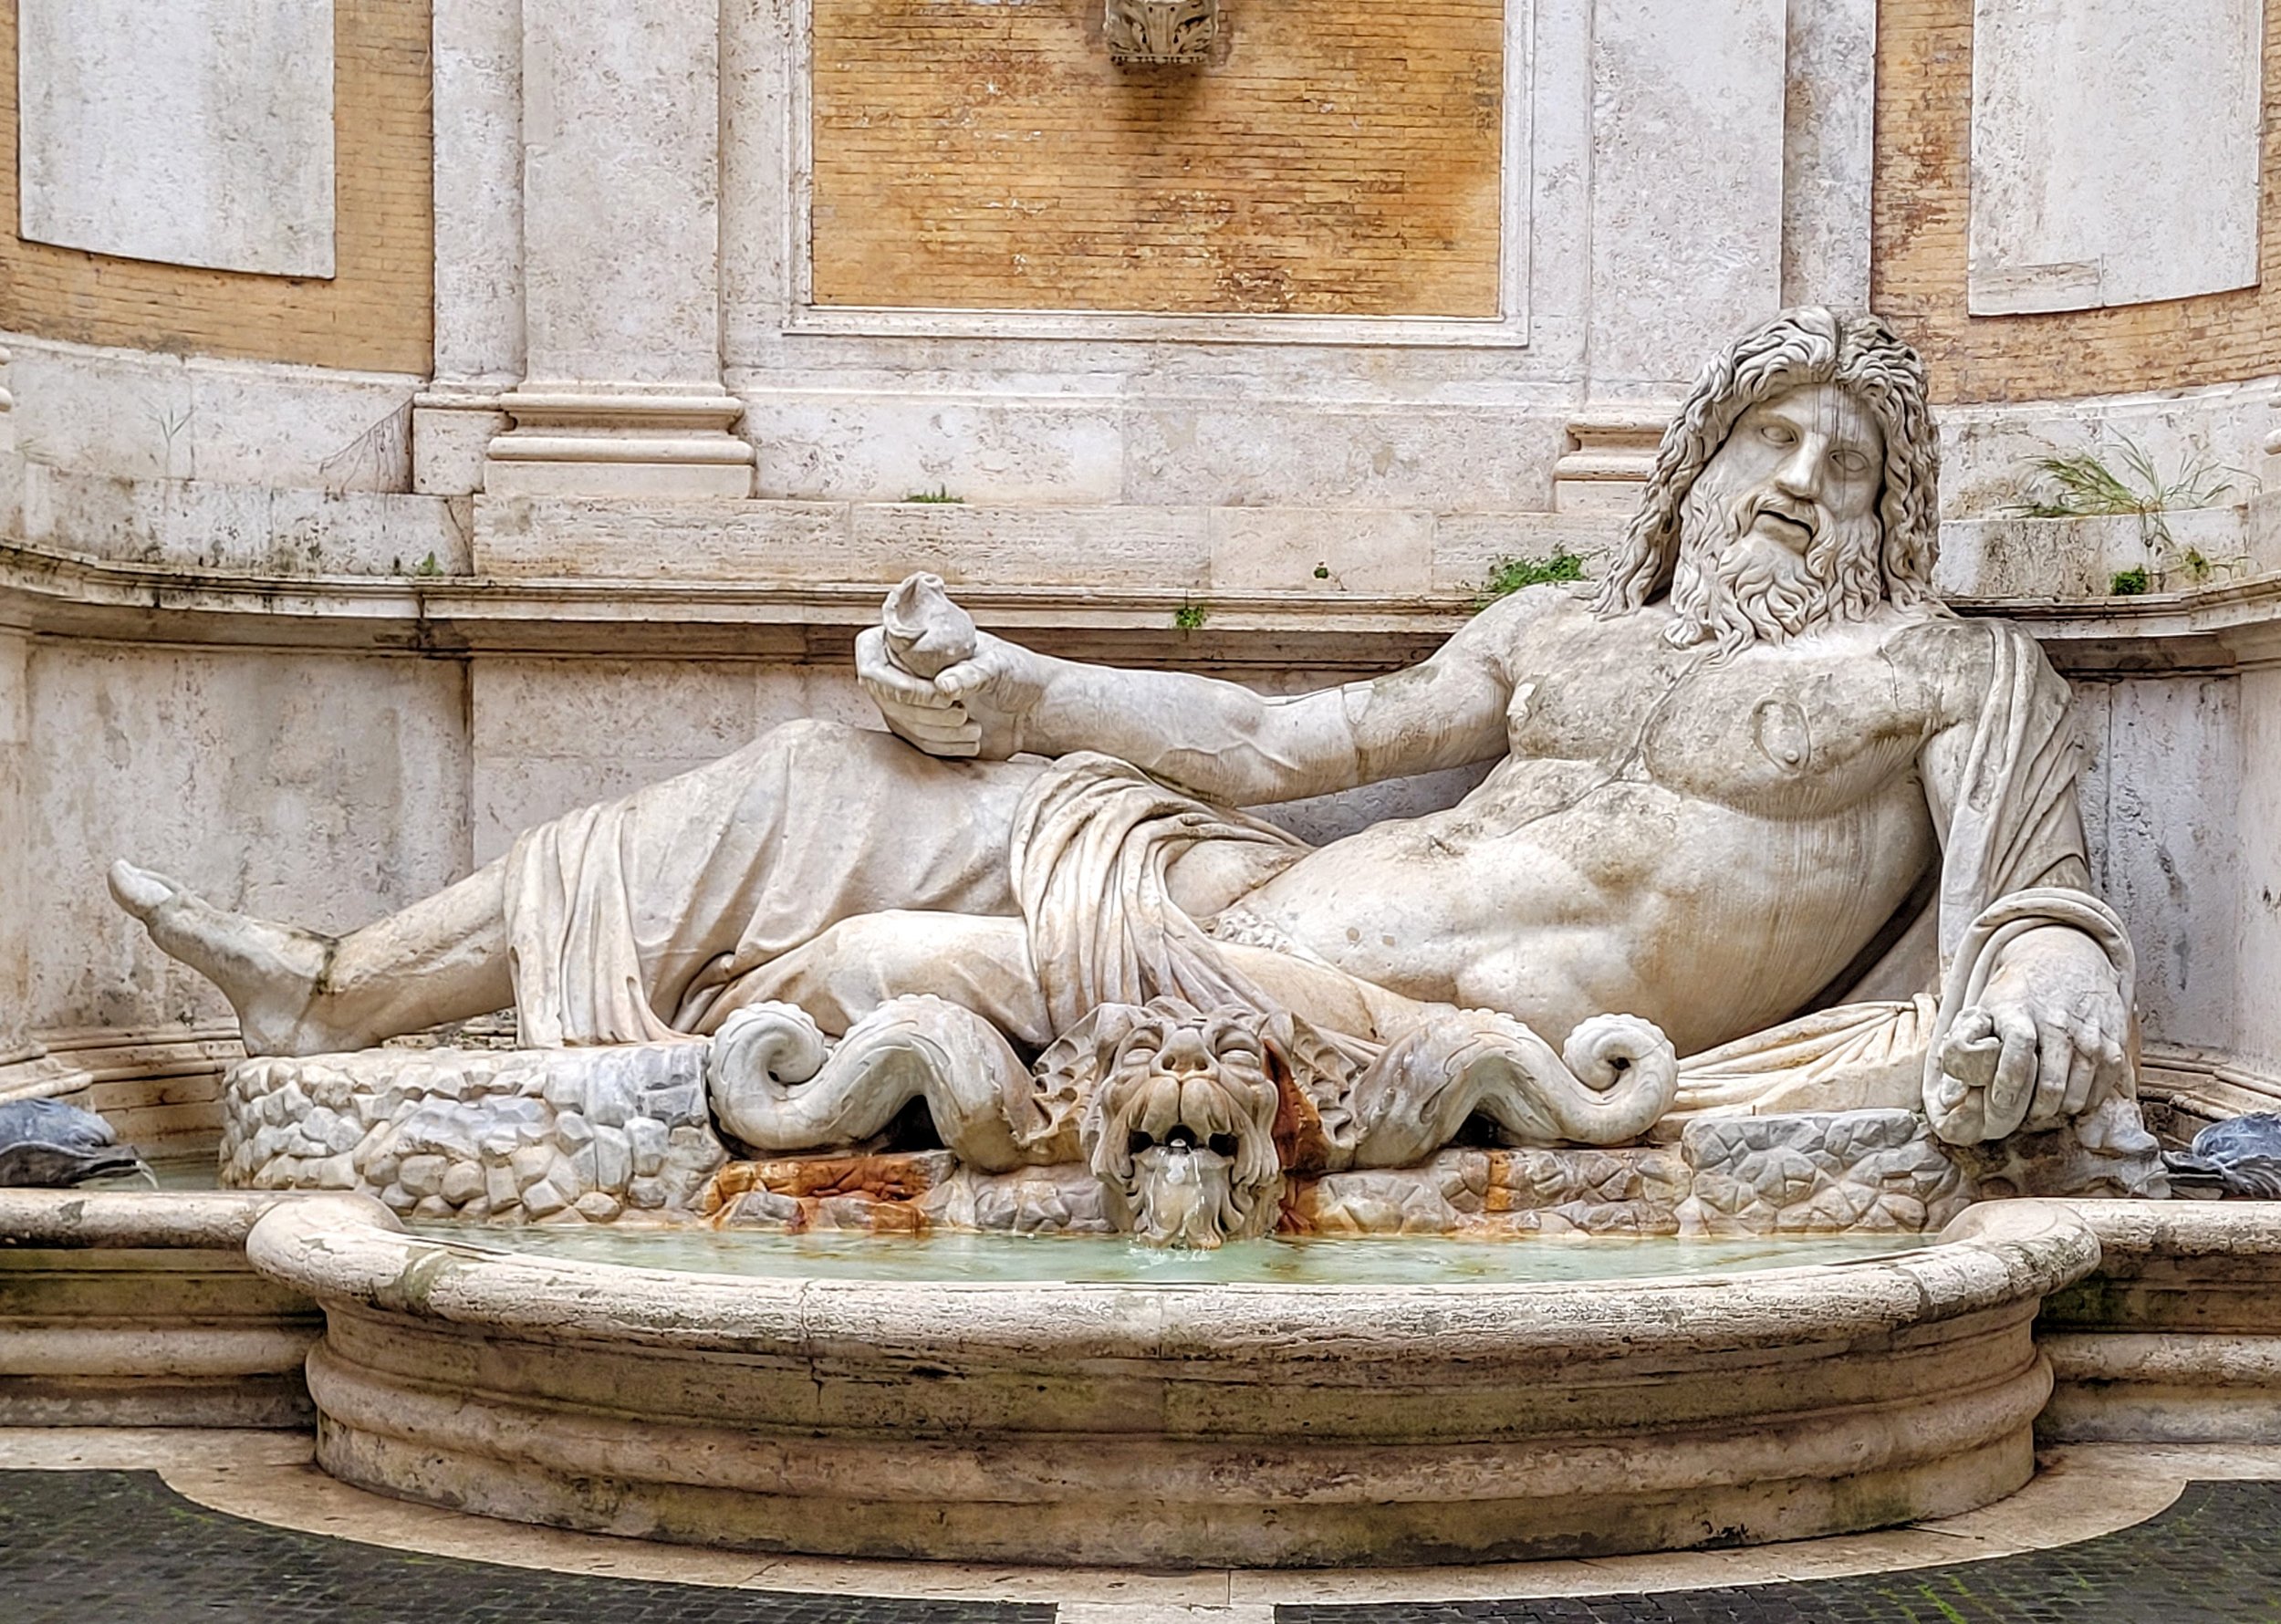 Greatest Italia Movies - Actual Marforio Statue